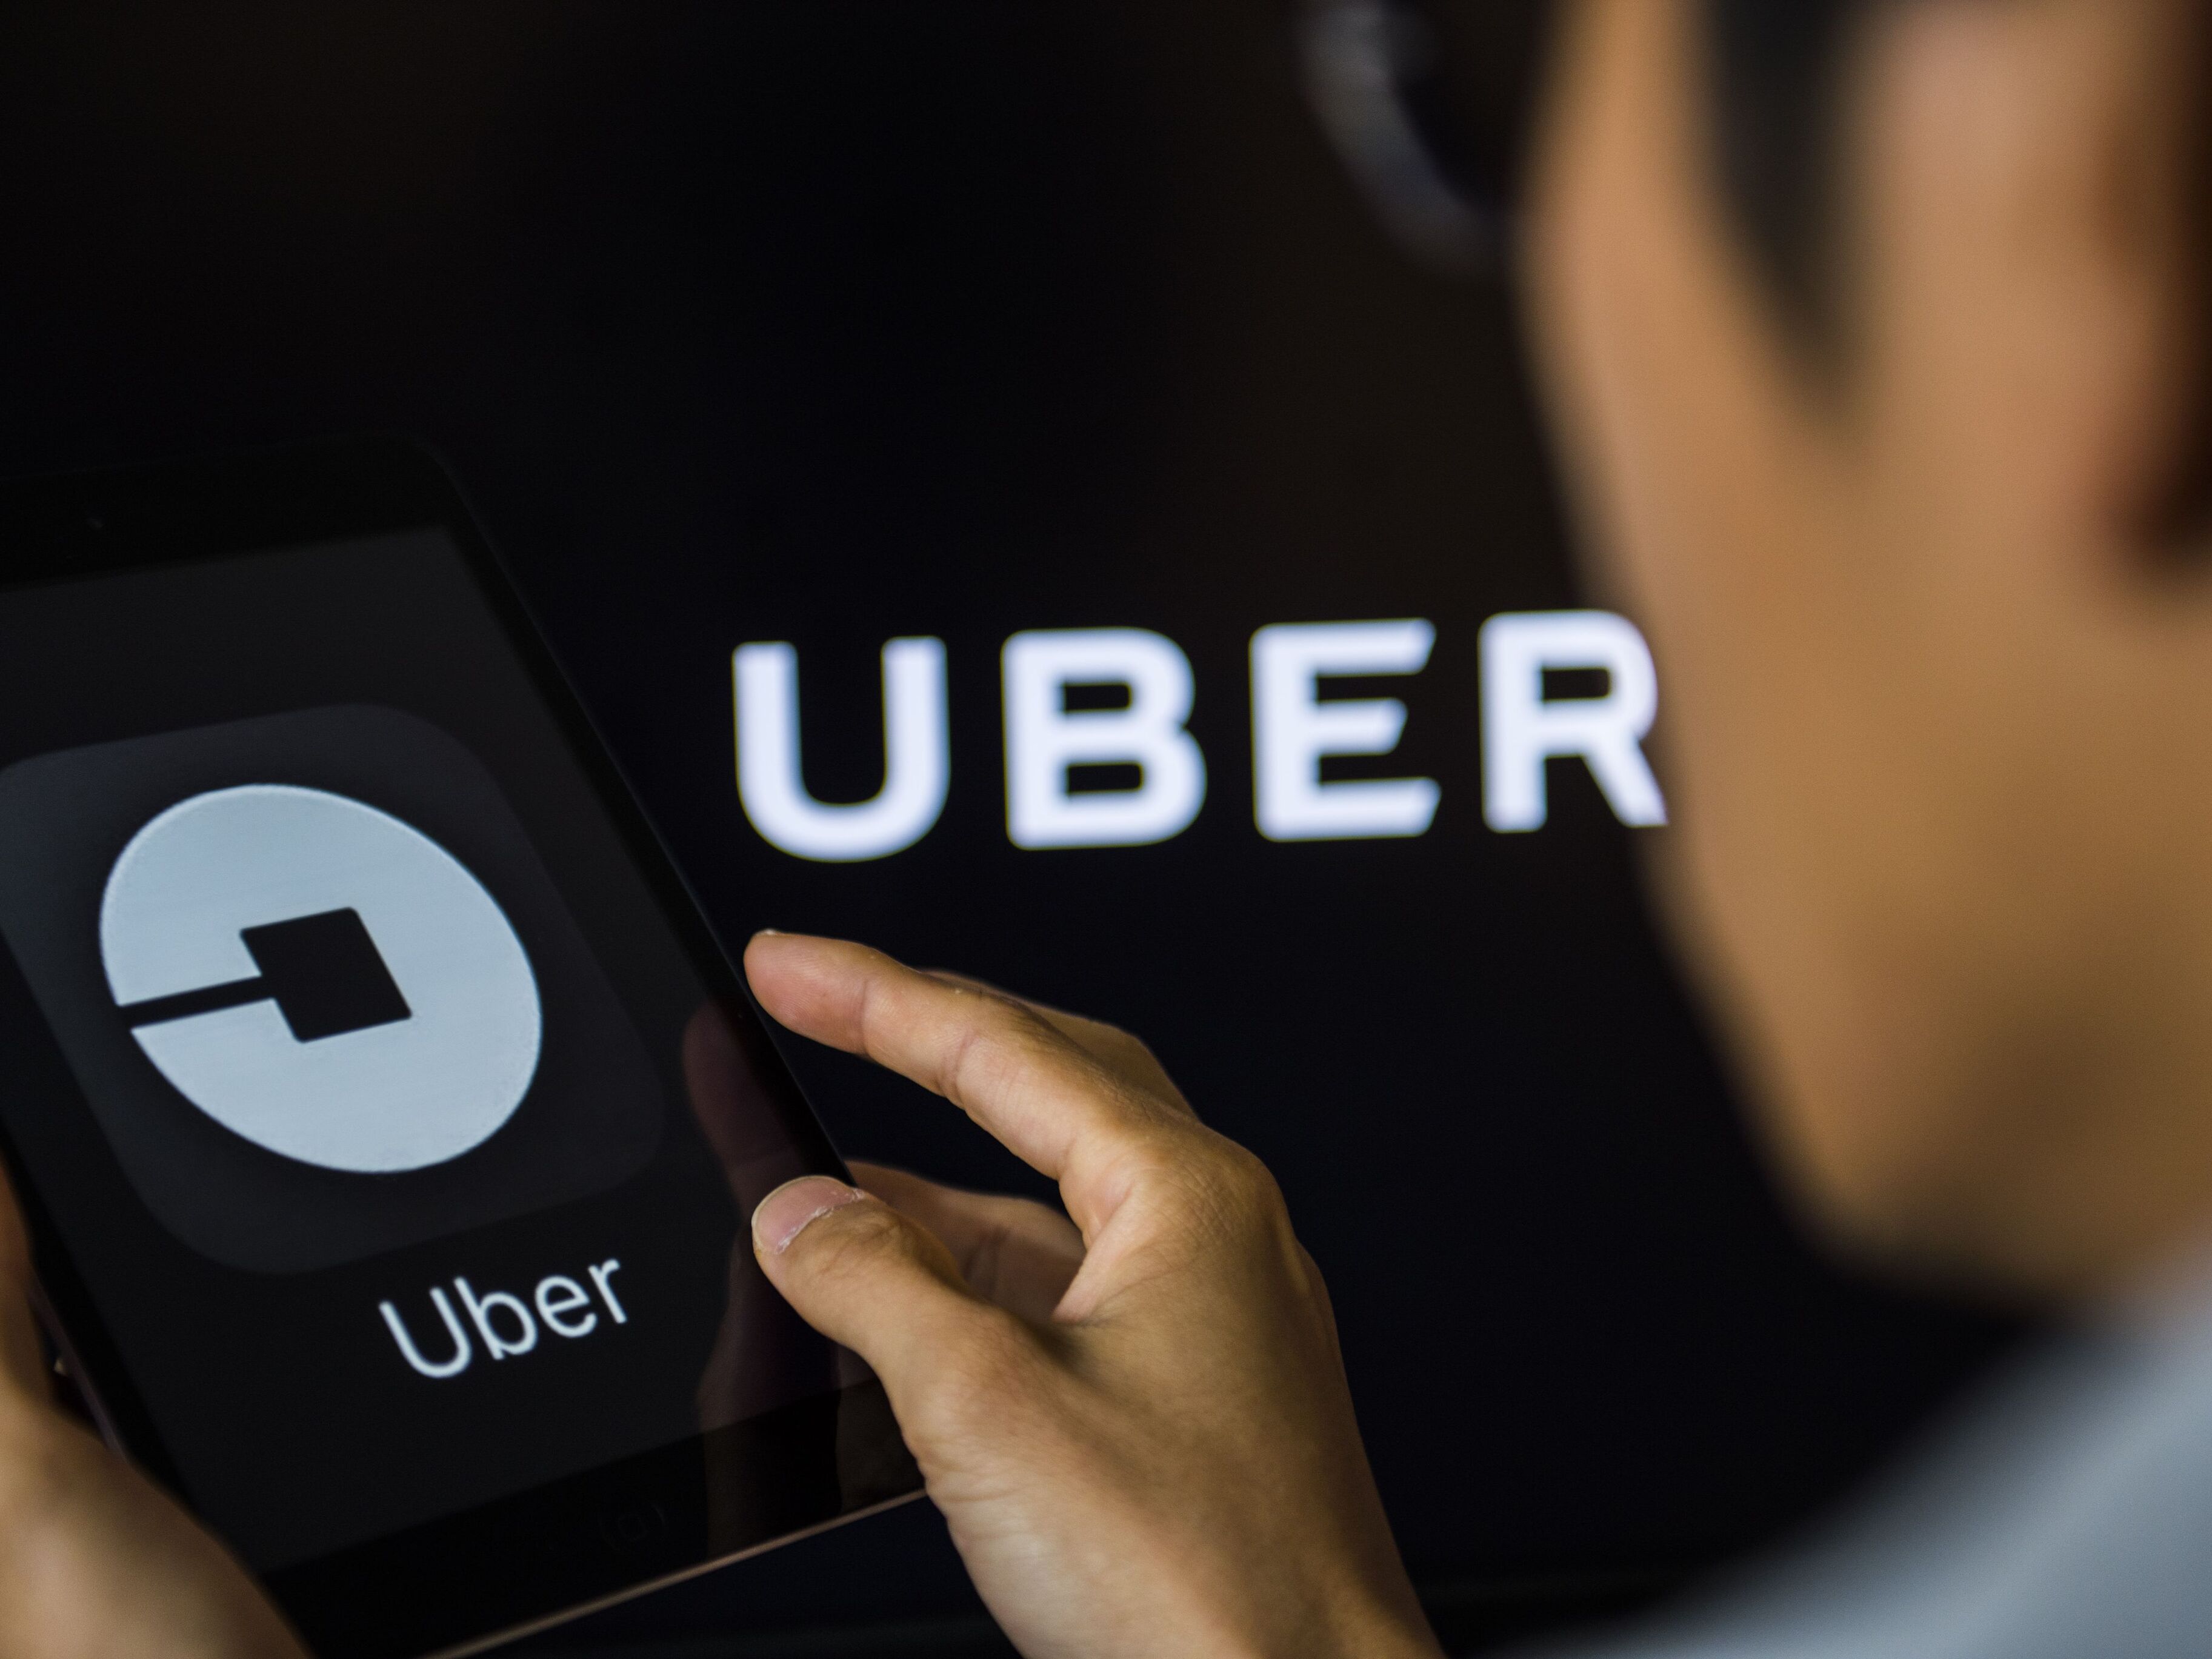 Uber откупился от наказания после утечки данных 57 млн клиентов